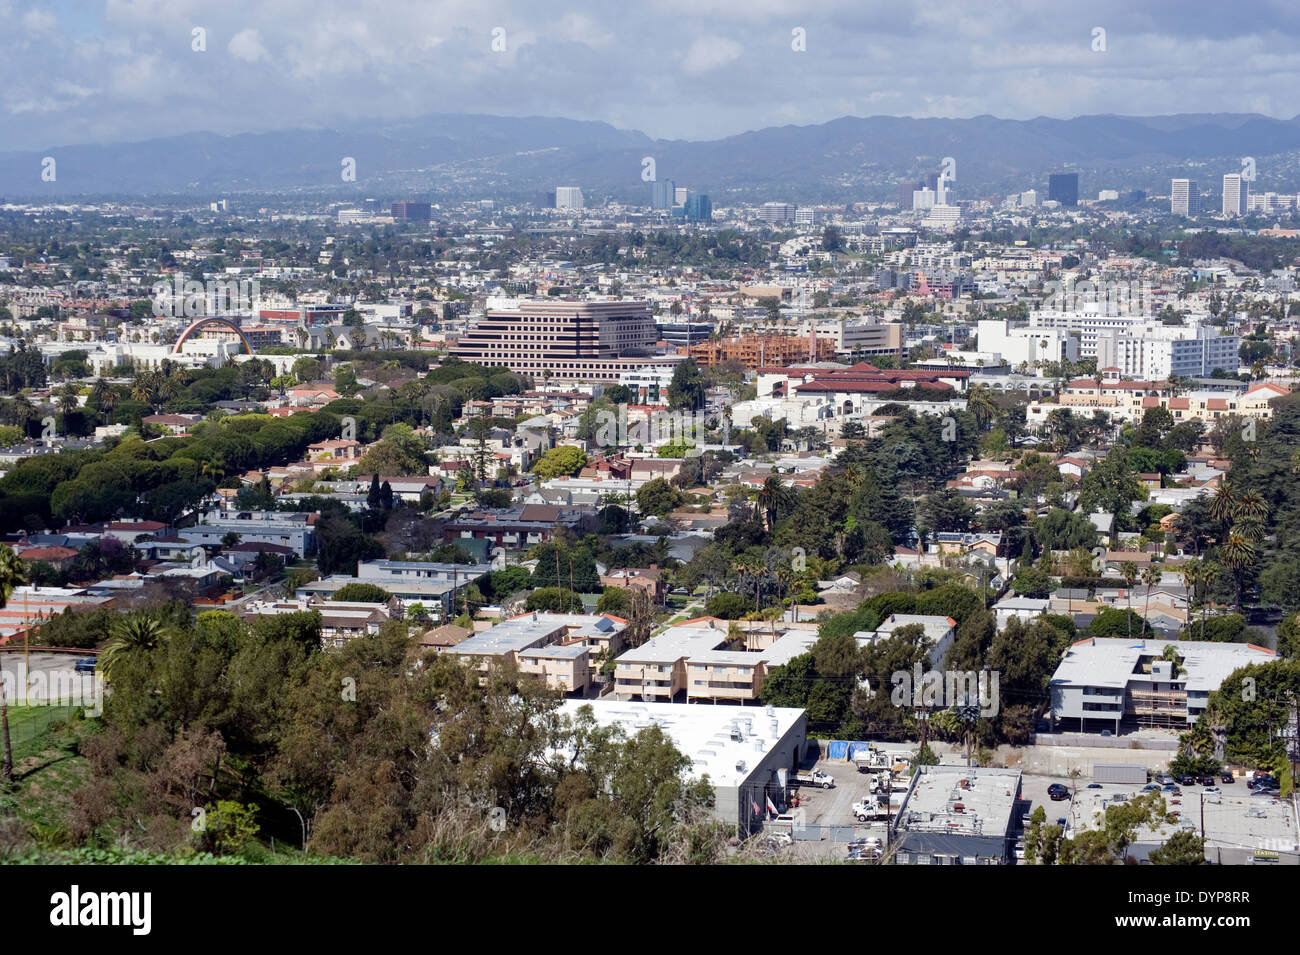 Vista de la ciudad de Culver de Baldwin Hills Mirador en Los Angeles, California Foto de stock